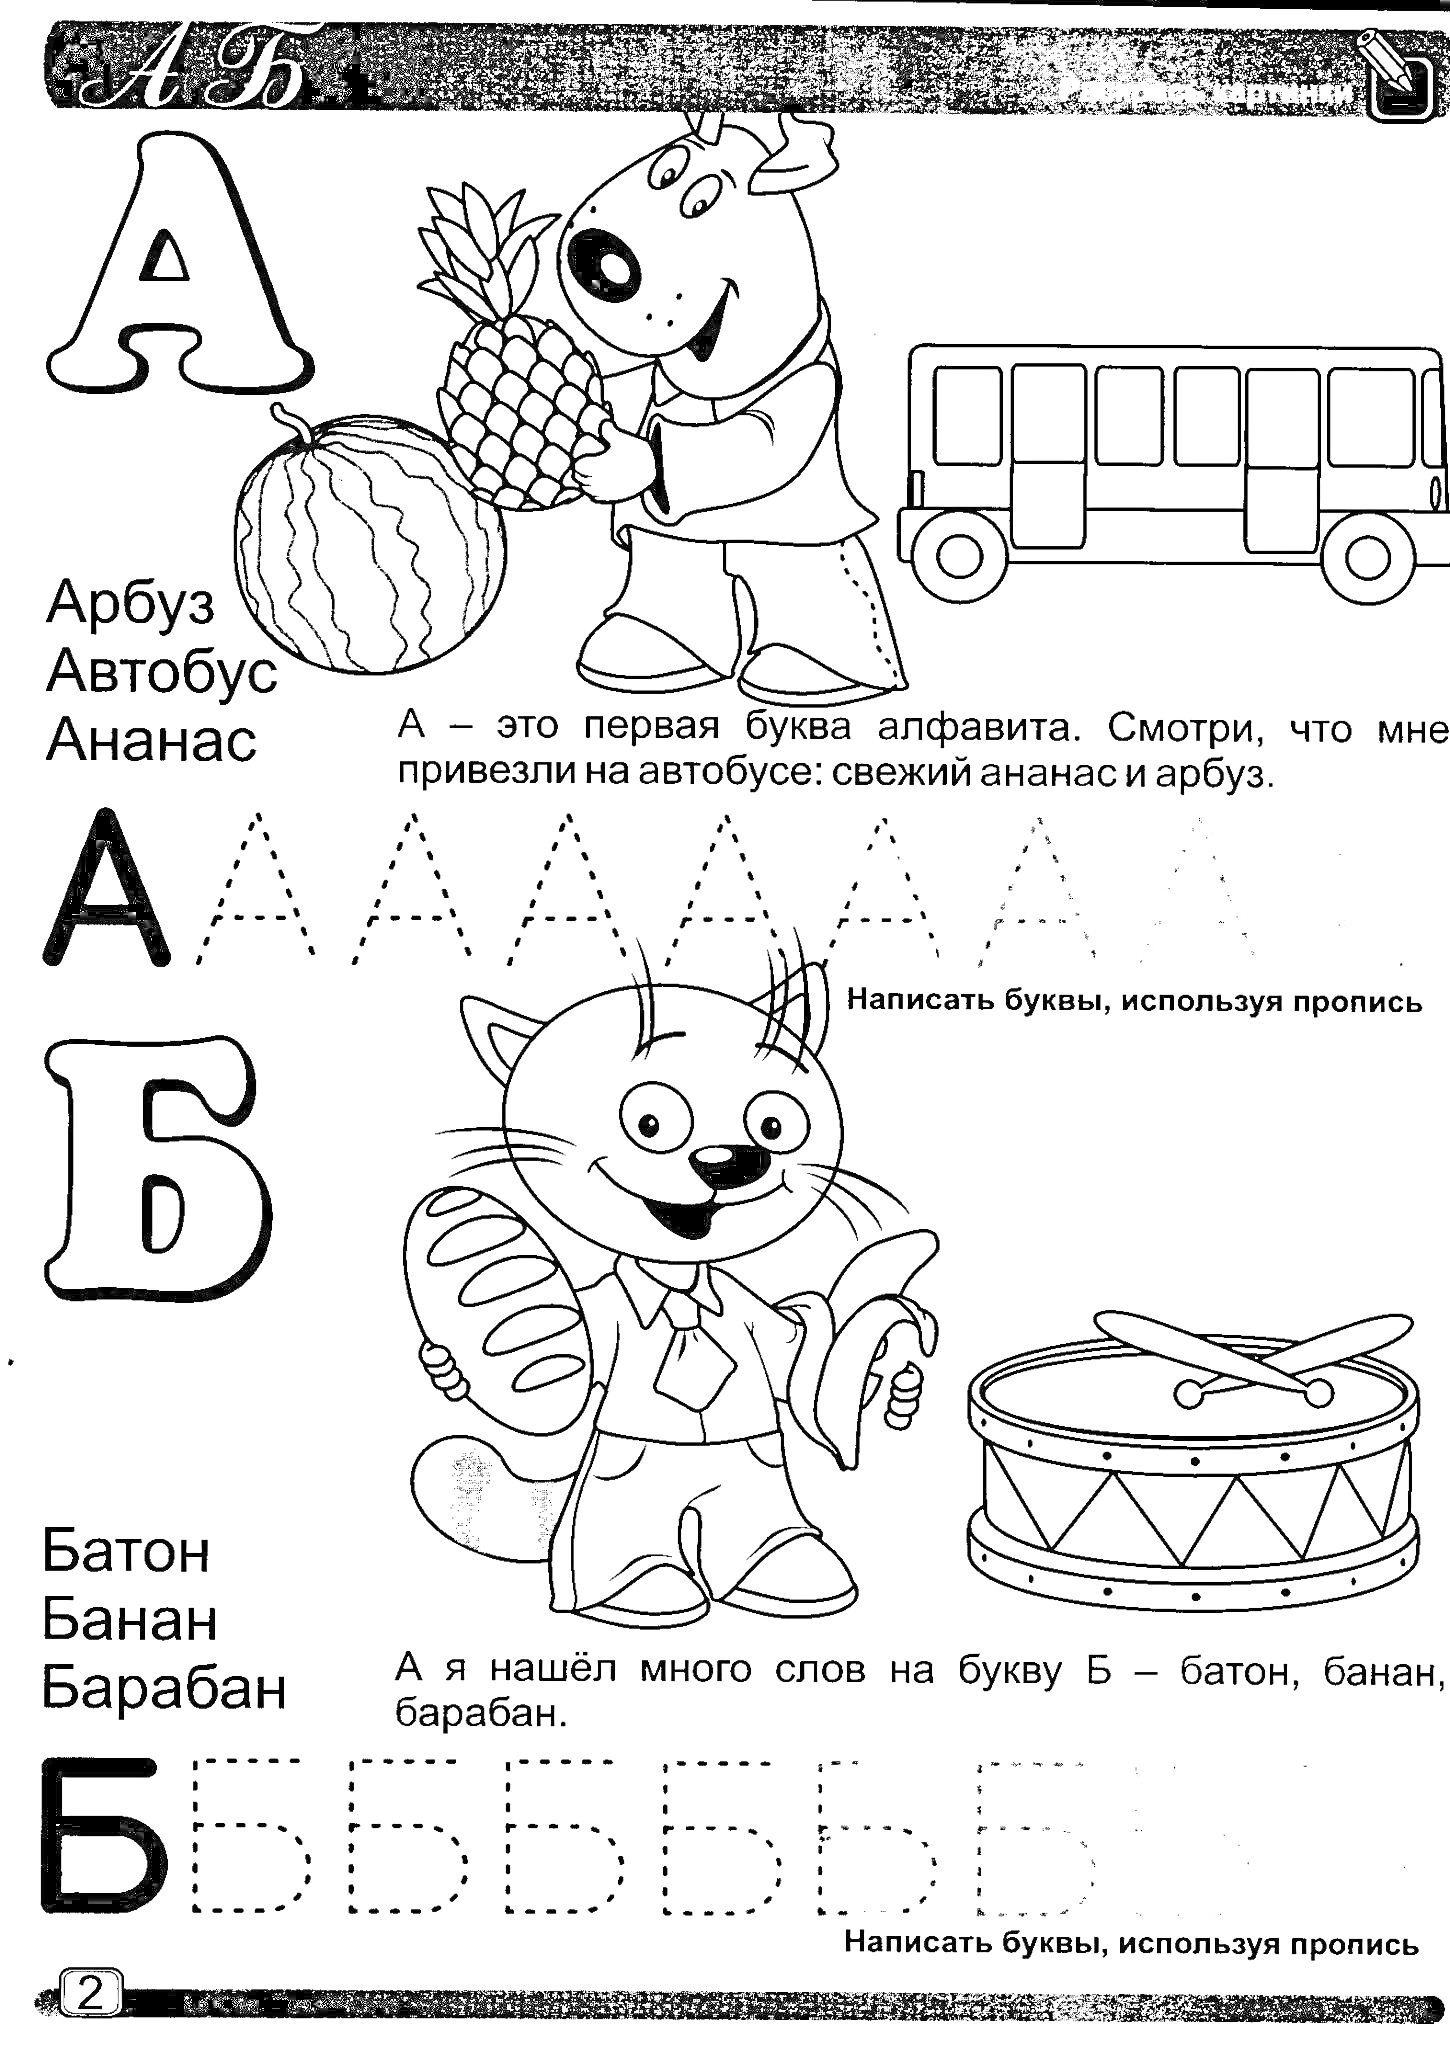 Раскраска Буквы А и Б для детей — арбуз, автобус, ананас, кот с фруитами, барабан